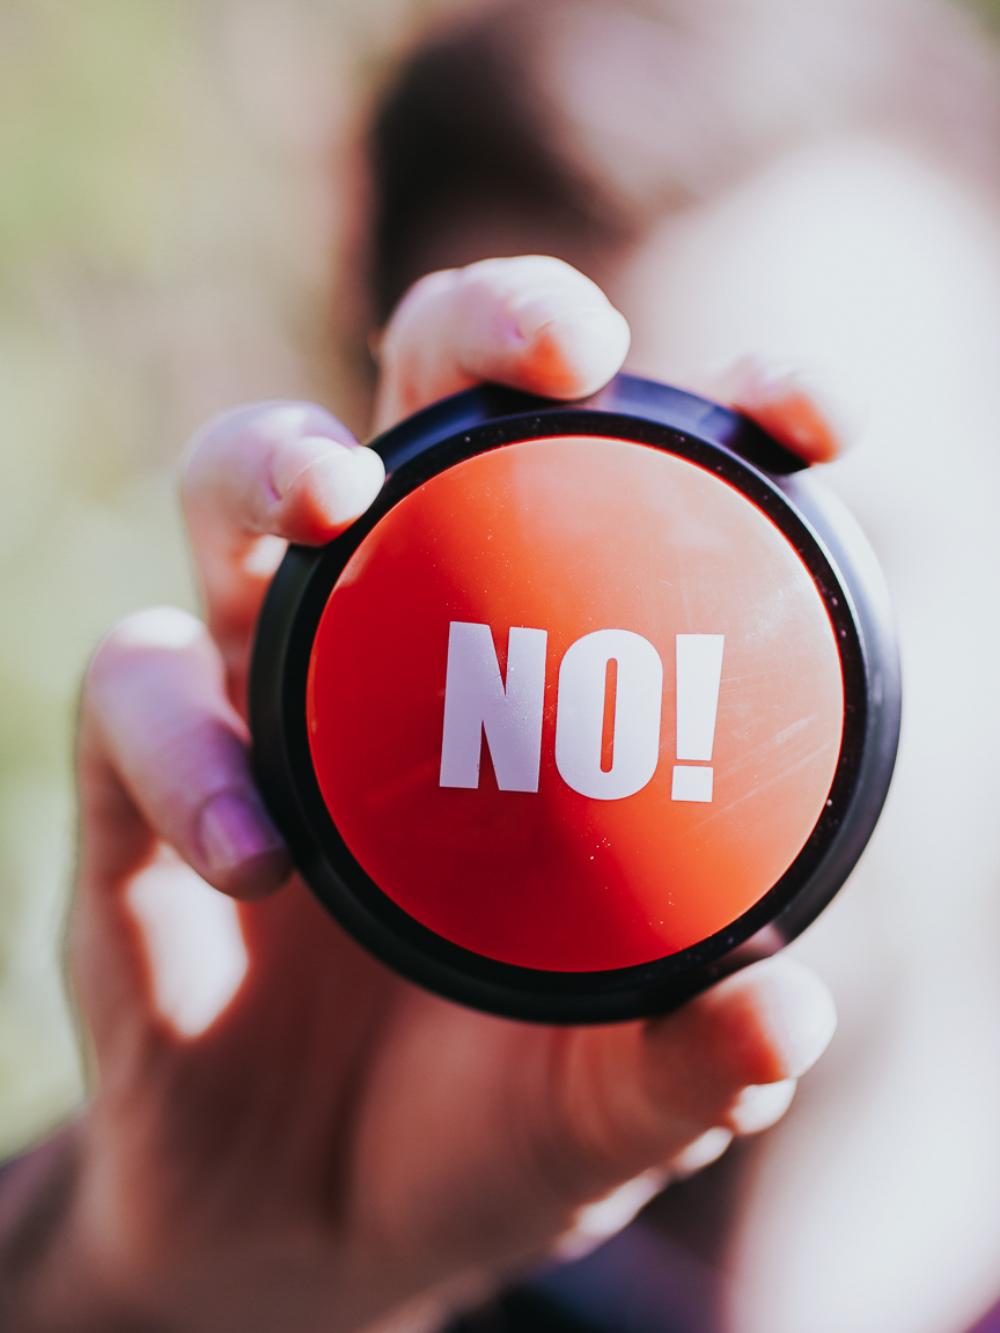 Eine Person hält einen roten Button mit der Aufschrift "No" in die Kamera.